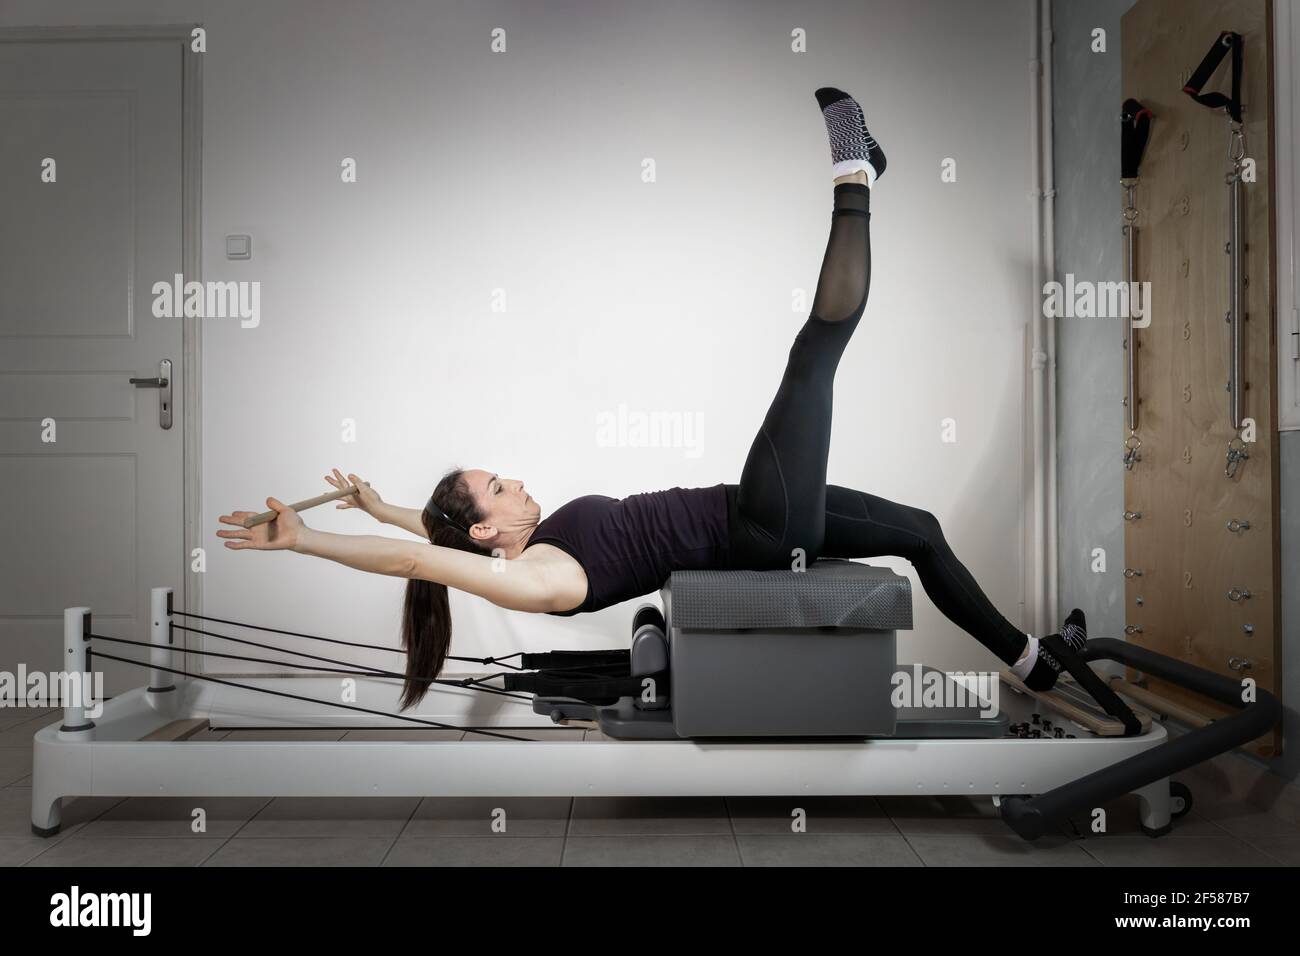 https://c8.alamy.com/compes/2f587b7/una-mujer-haciendo-ejercicios-de-pilates-en-una-cama-reformada-2f587b7.jpg